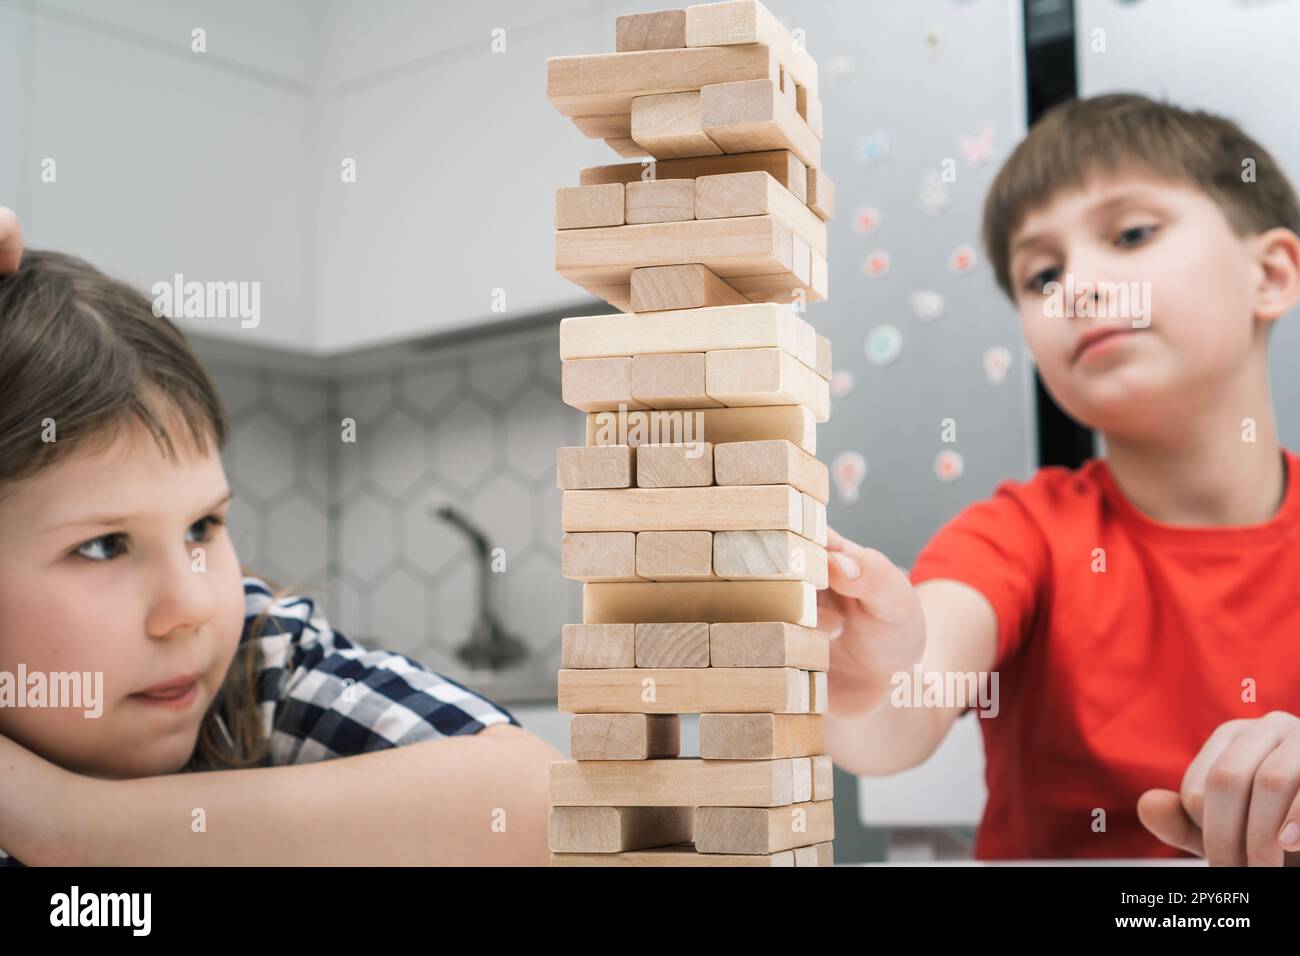 Les enfants de l'école jouent dans une tour assise près d'une table. Garçon et fille construisent tour à partir de petits blocs de bois gardant l'équilibre. Banque D'Images